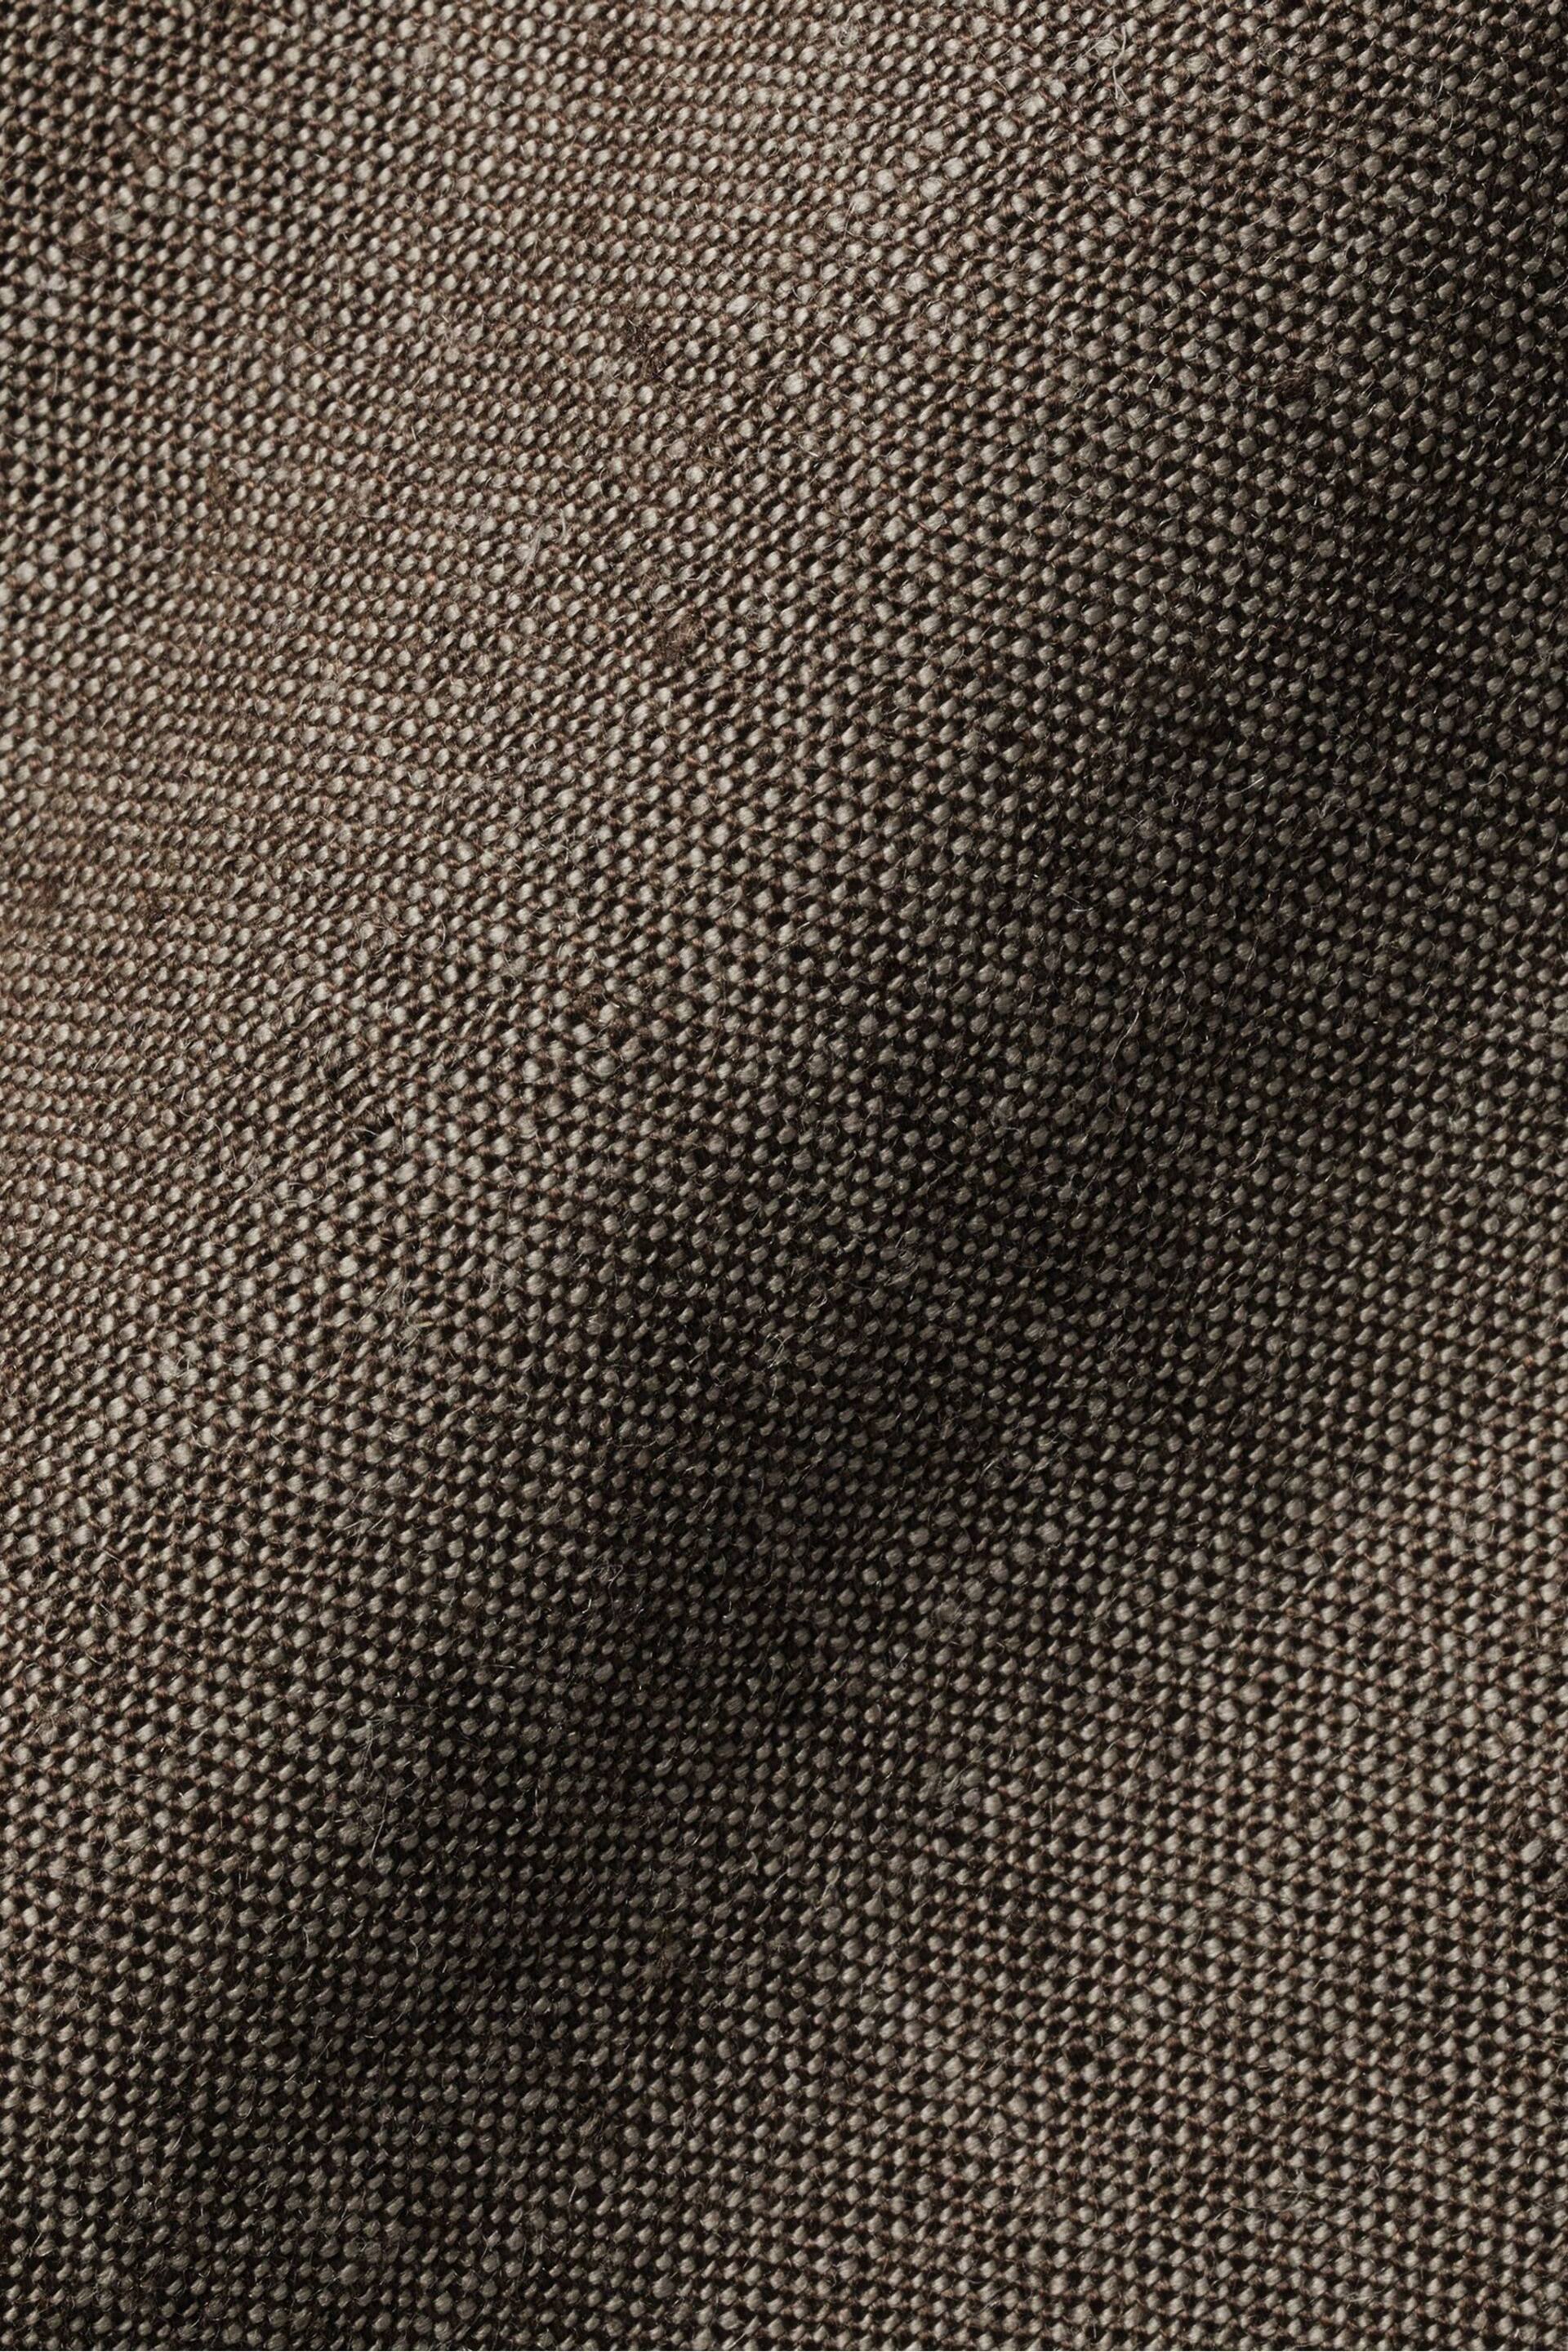 Charles Tyrwhitt Brown/Cream Slim Fit Plain Short Sleeve Pure Linen Full Sleeves Shirt - Image 6 of 6